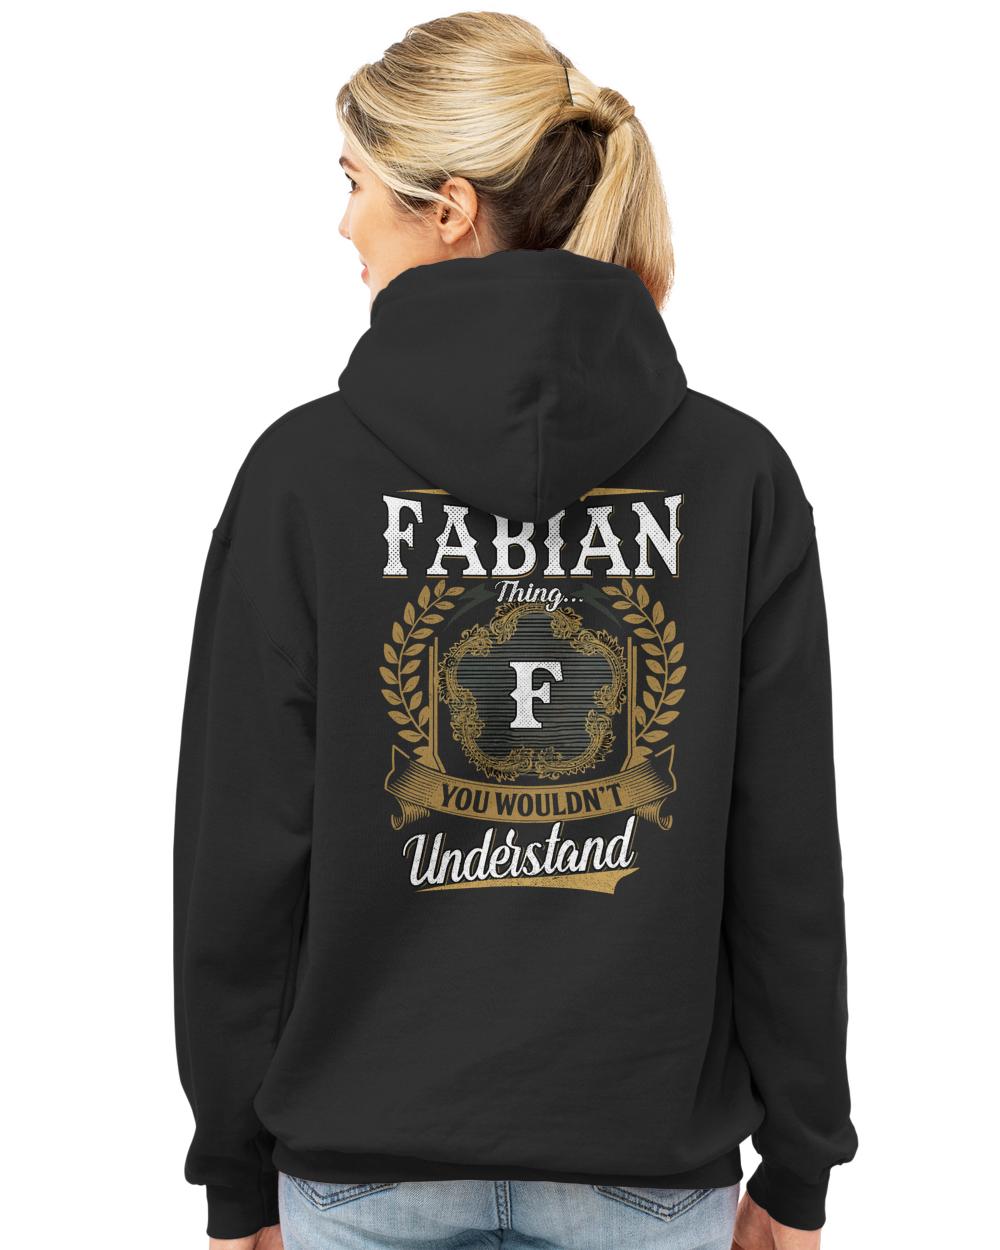 FABIAN-13K-1-01